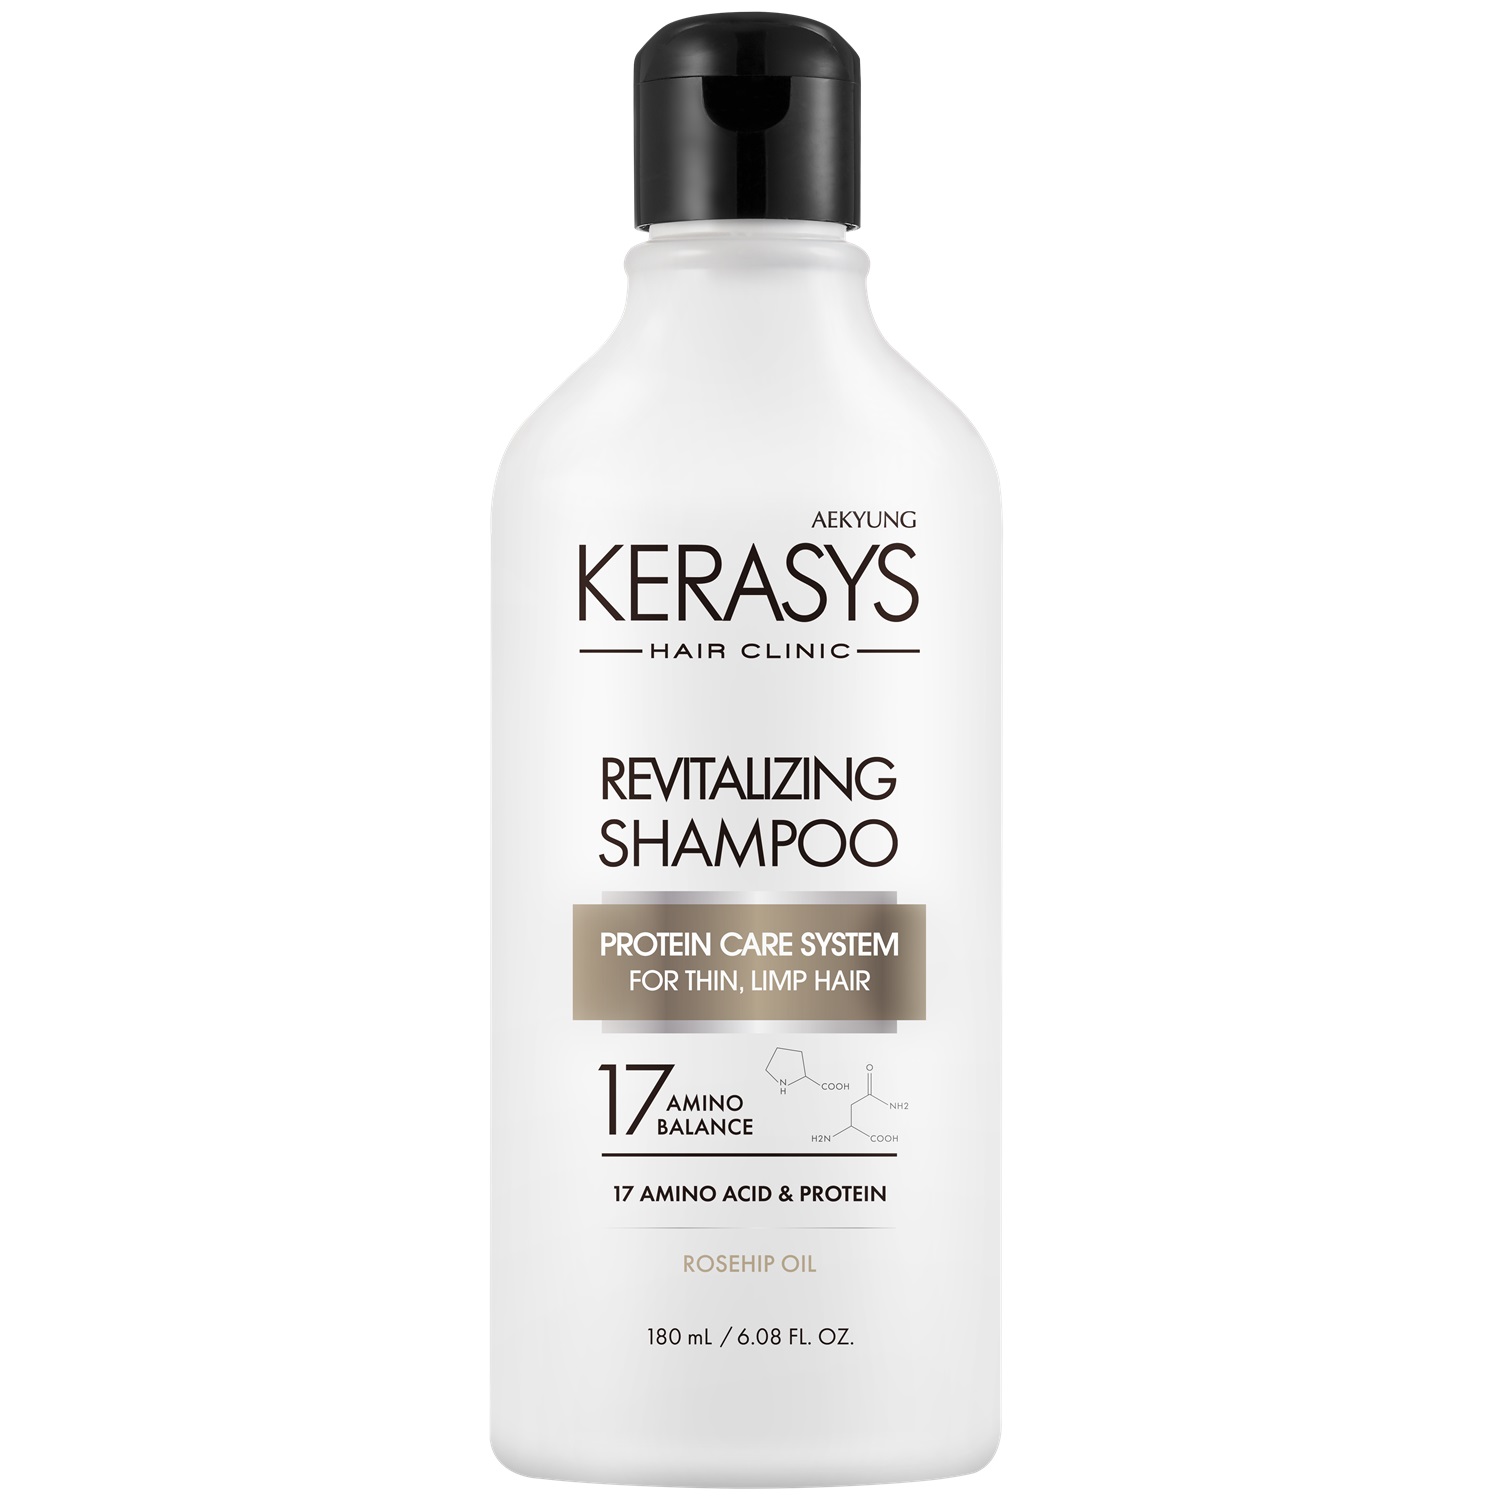 Kerasys Шампунь оздоравливающий для волос, 180 мл (Kerasys, Hair Clinic) цена и фото